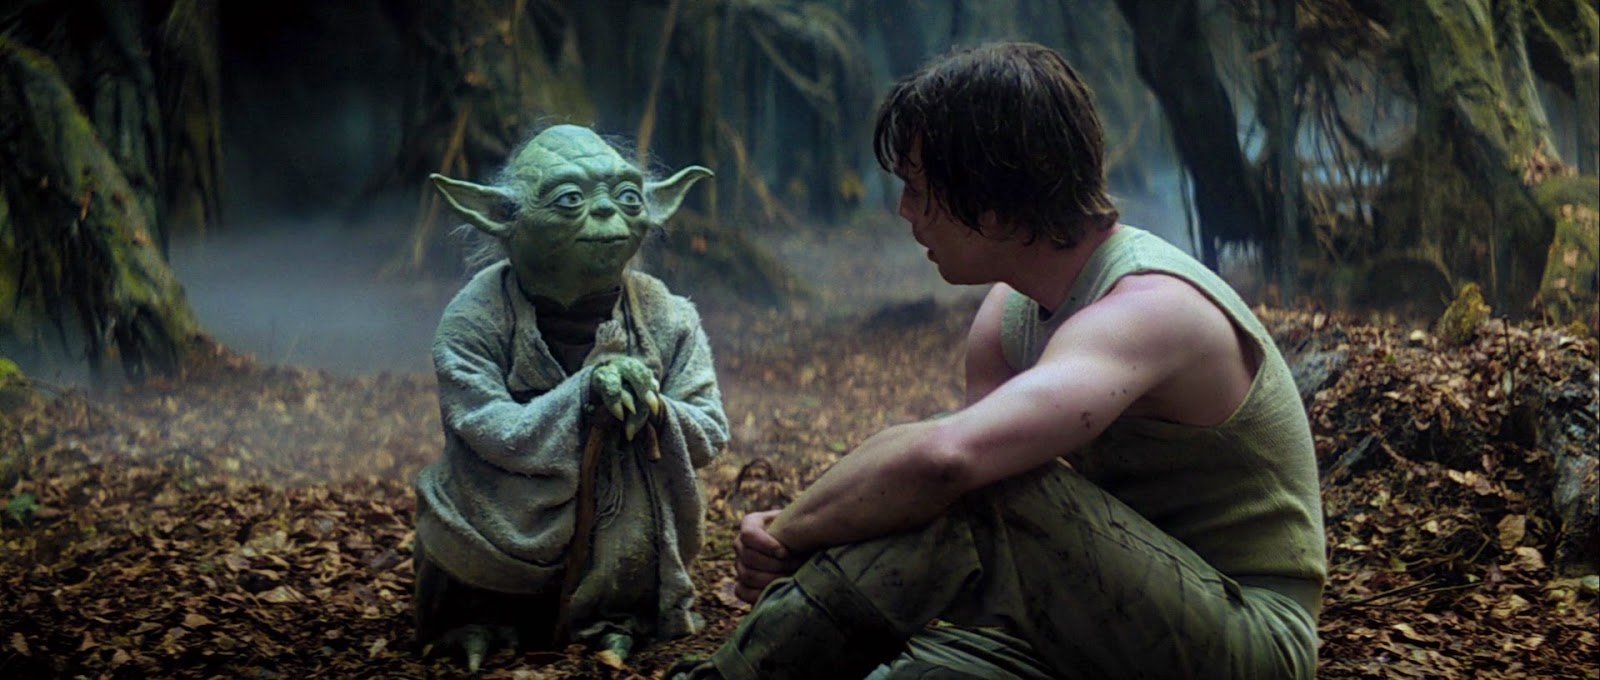 Yoda sendo mentor de Luke Skywalker